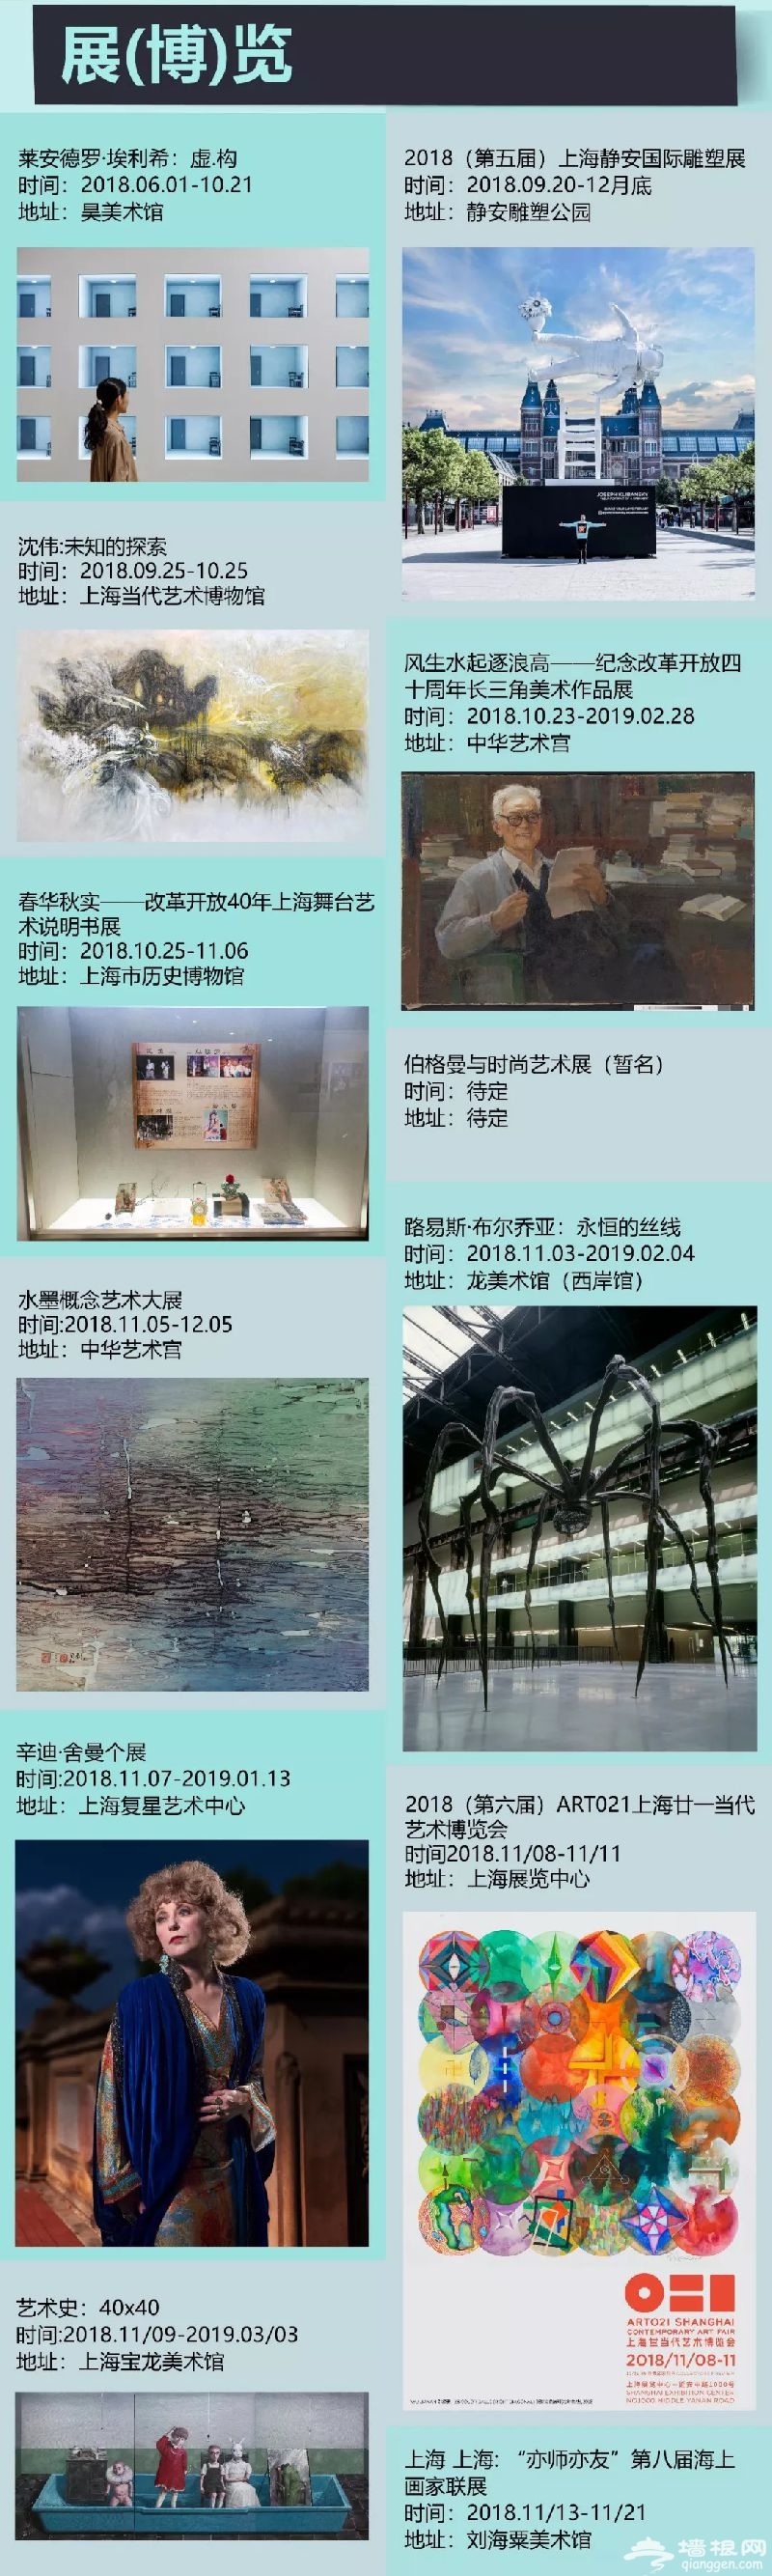 2018上海国际艺术节时间+演出节目单+门票